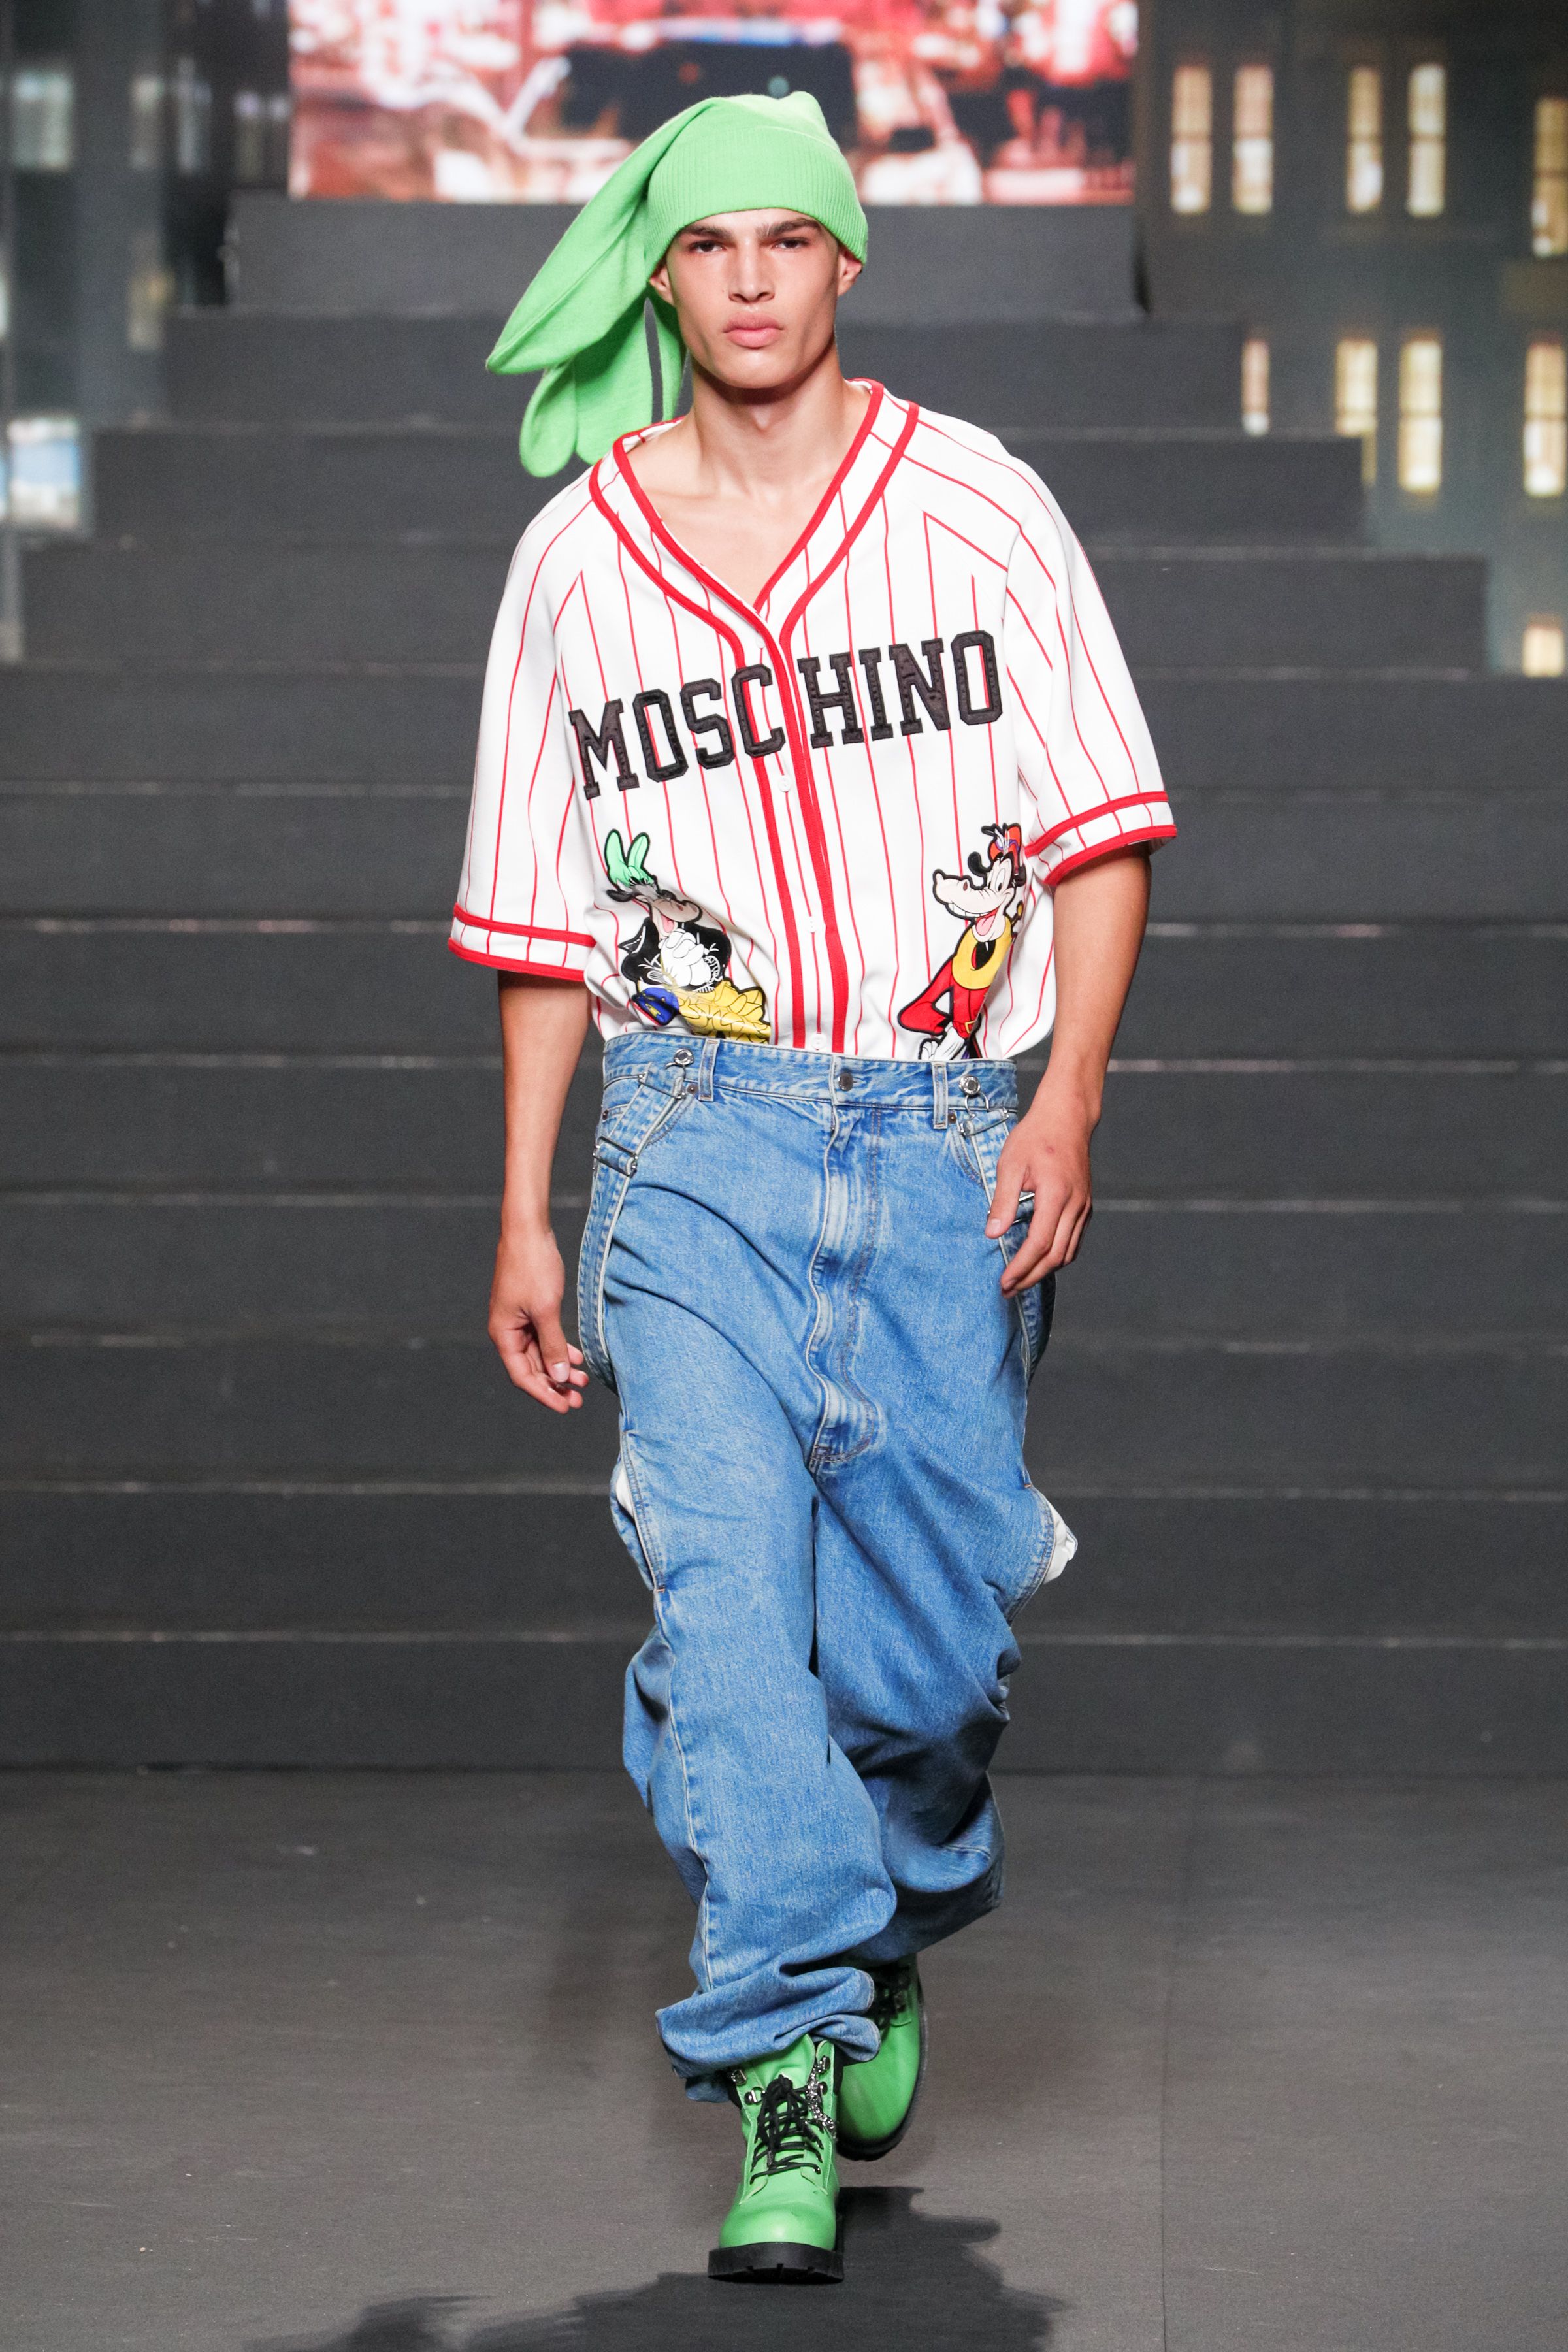 moschino h&m baseball dress